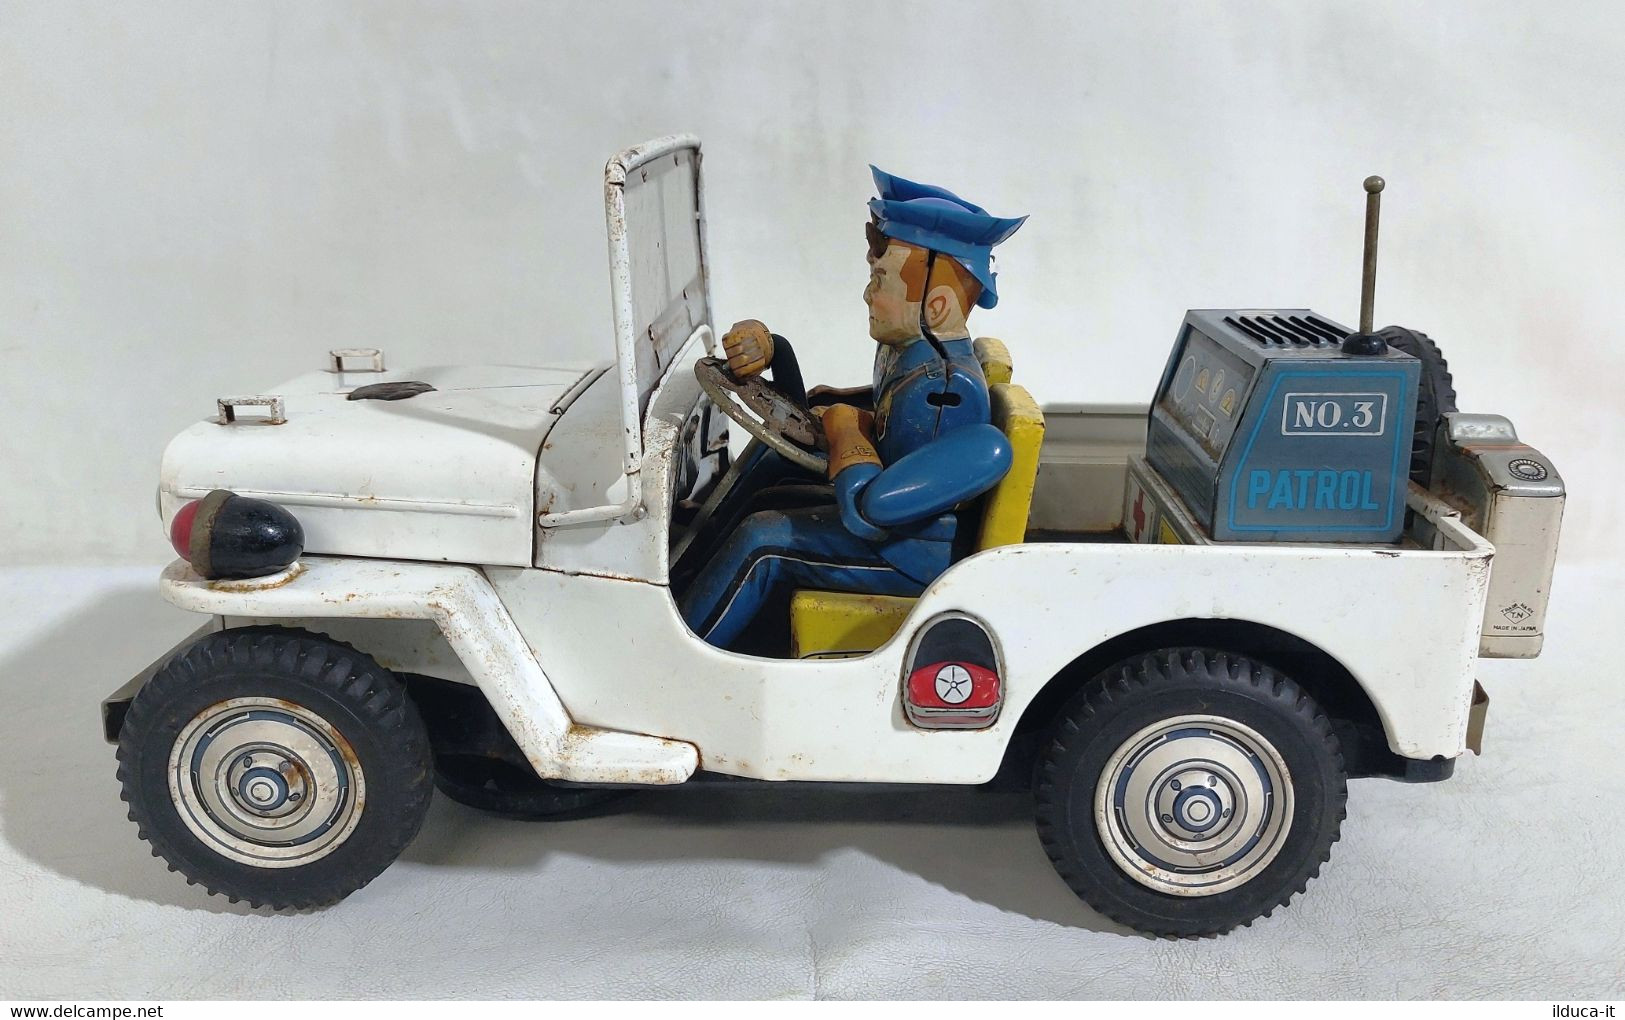 I102707 Giocattolo di latta T.N Nomura - Jeep della Polizia - anni 50 - Giappone